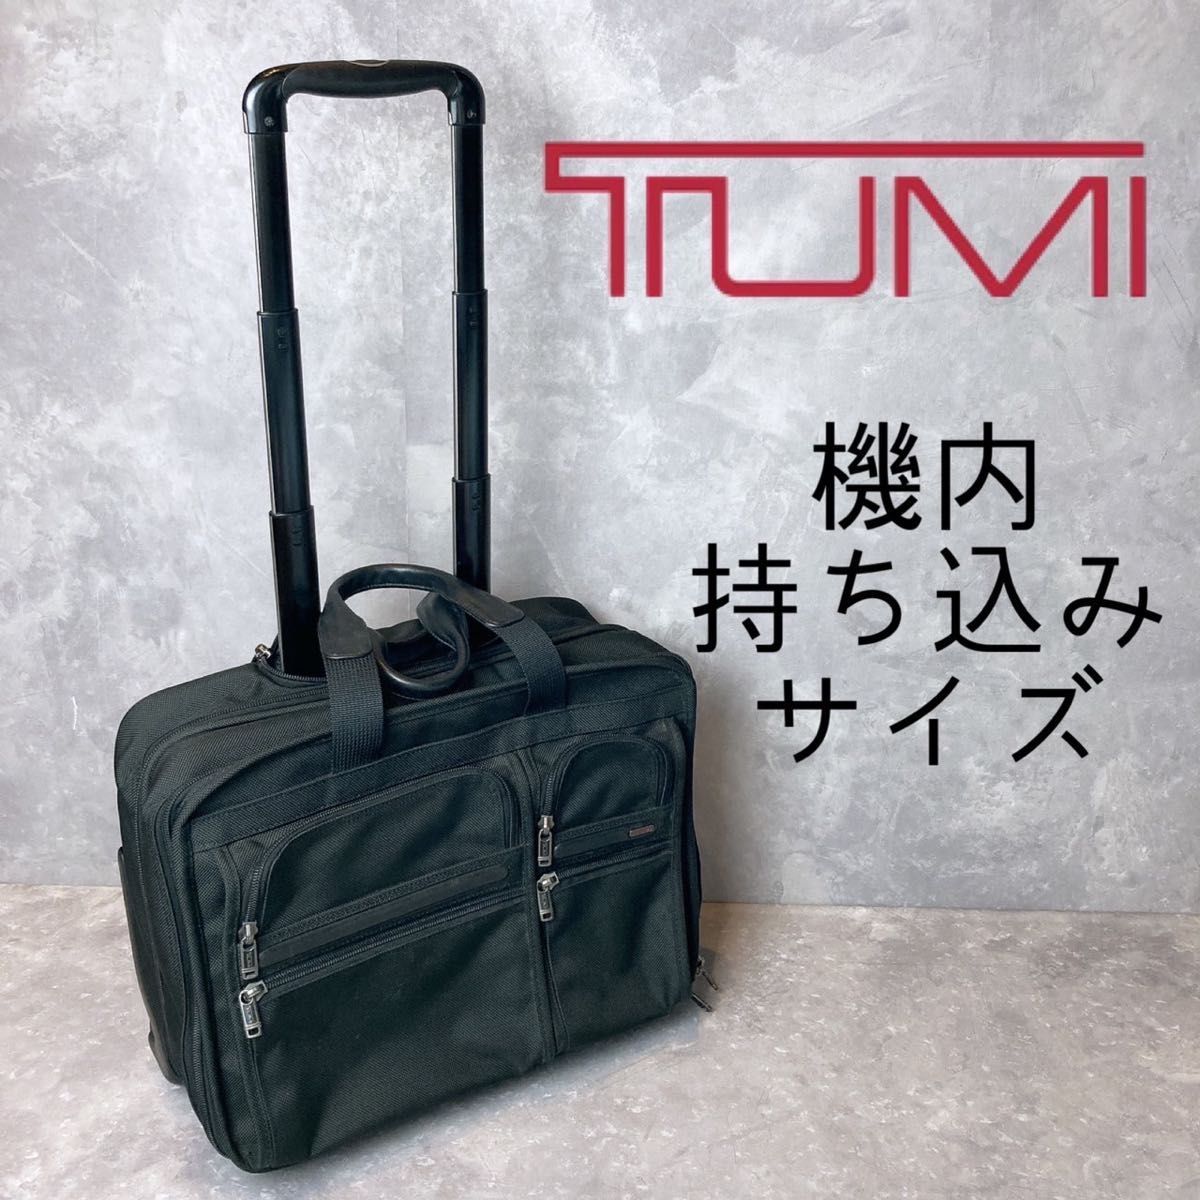 TUMI キャリーバッグ ソフトキャリーケース 機内持ち込み トゥミ